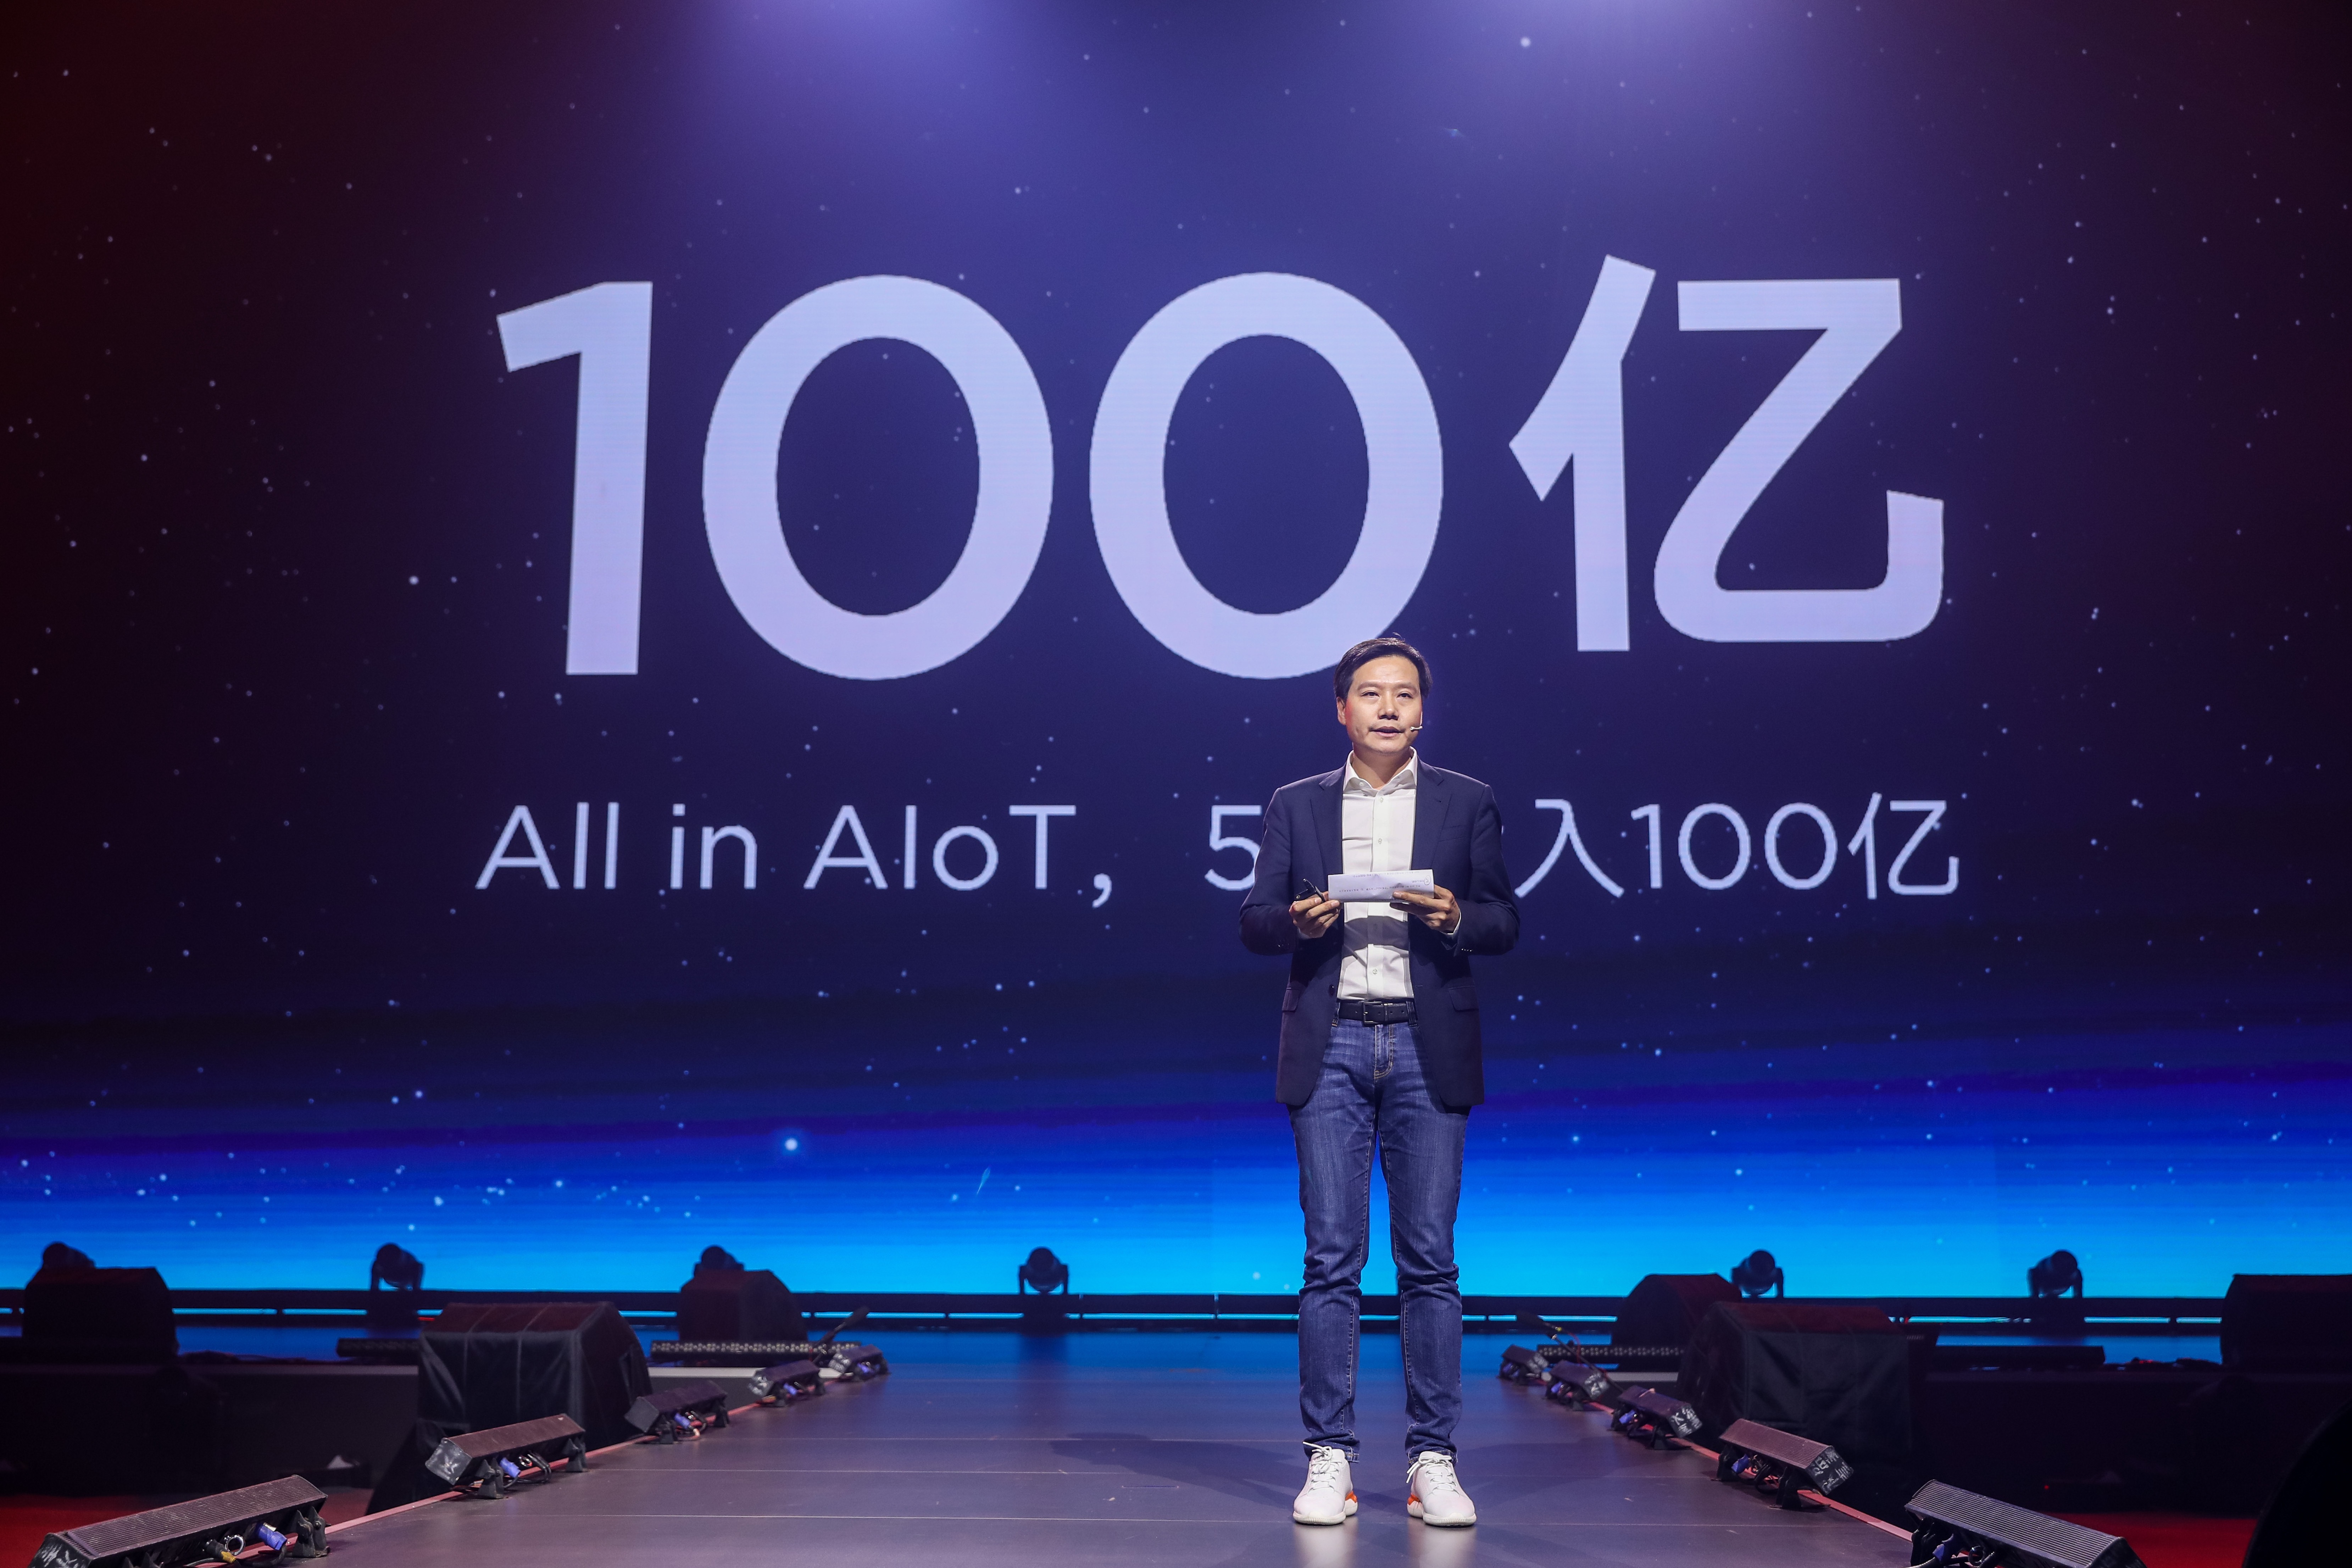 雷军宣布未来5年将投入100亿元“All in AIoT”